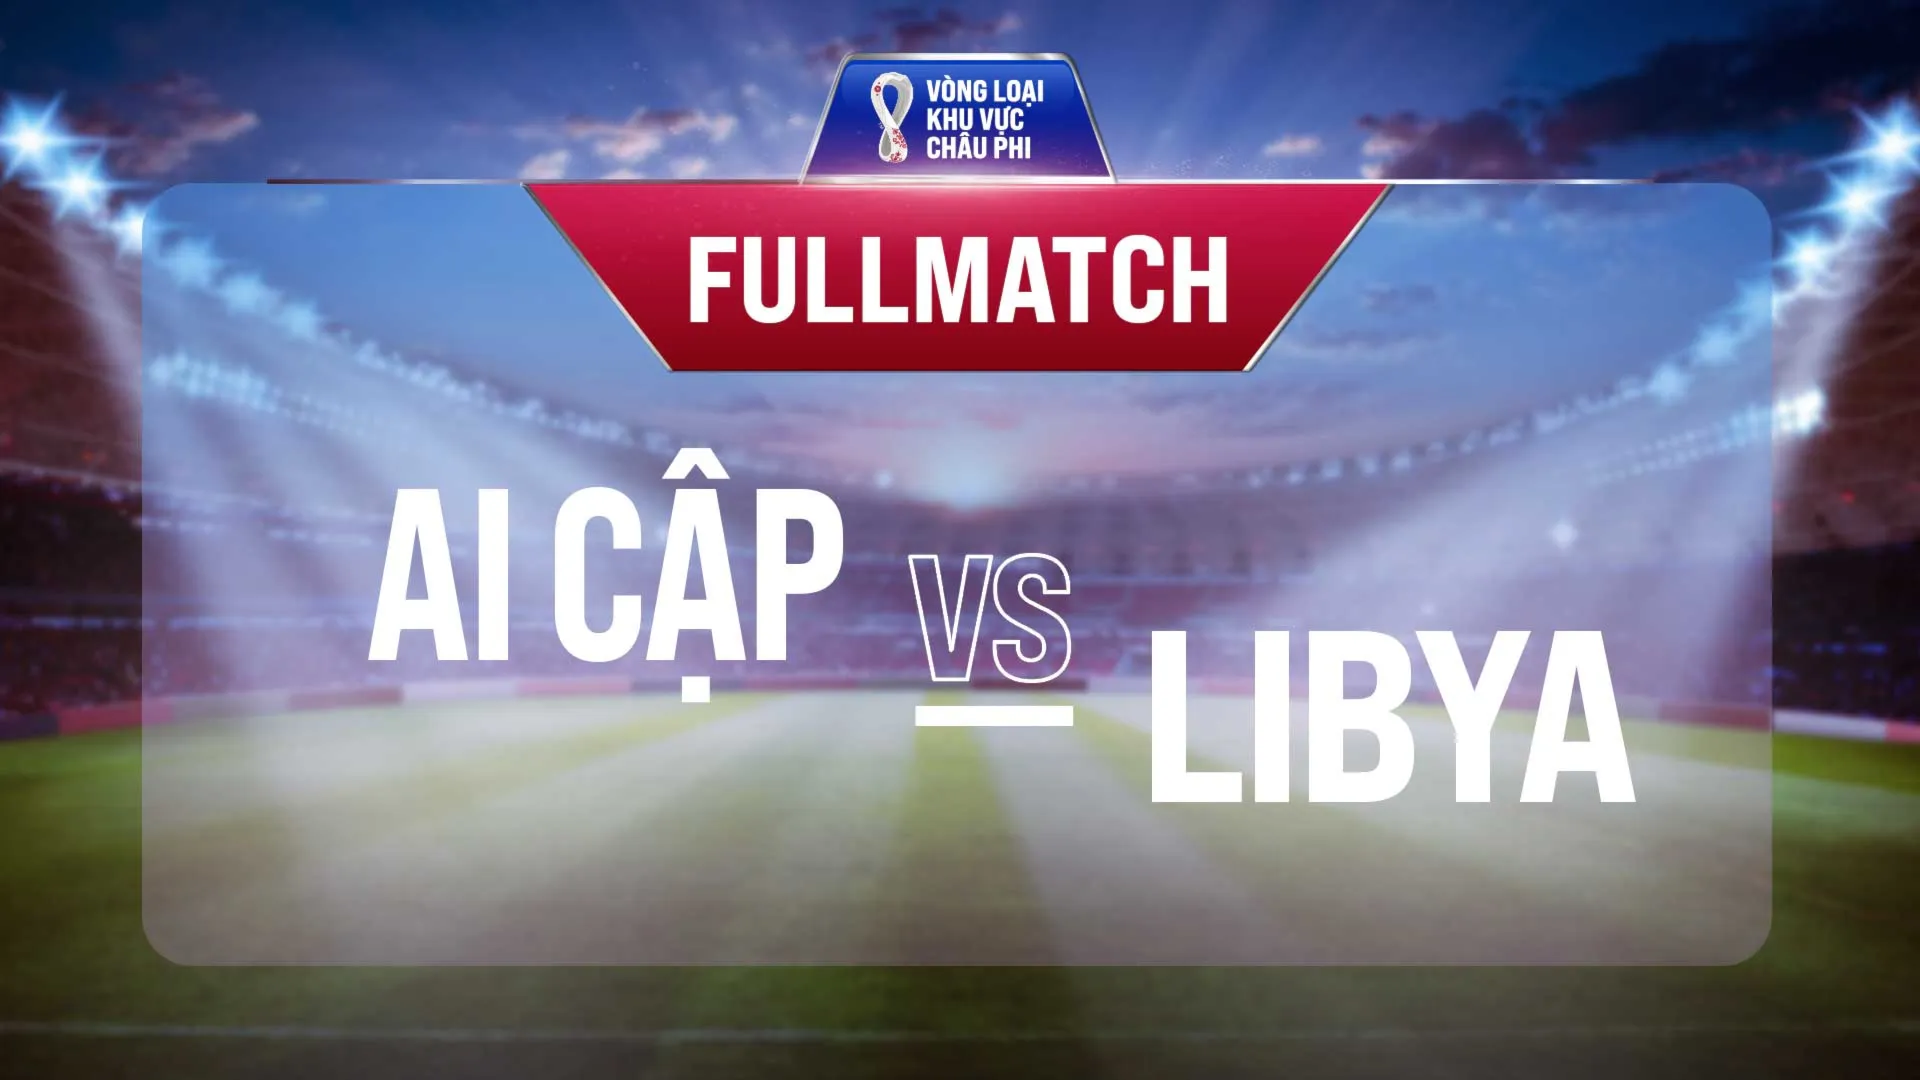 Full match Ai Cập vs Libya (Lượt trận 3 Vòng Loại thứ 2 World Cup 2022 - Khu vực châu Phi)